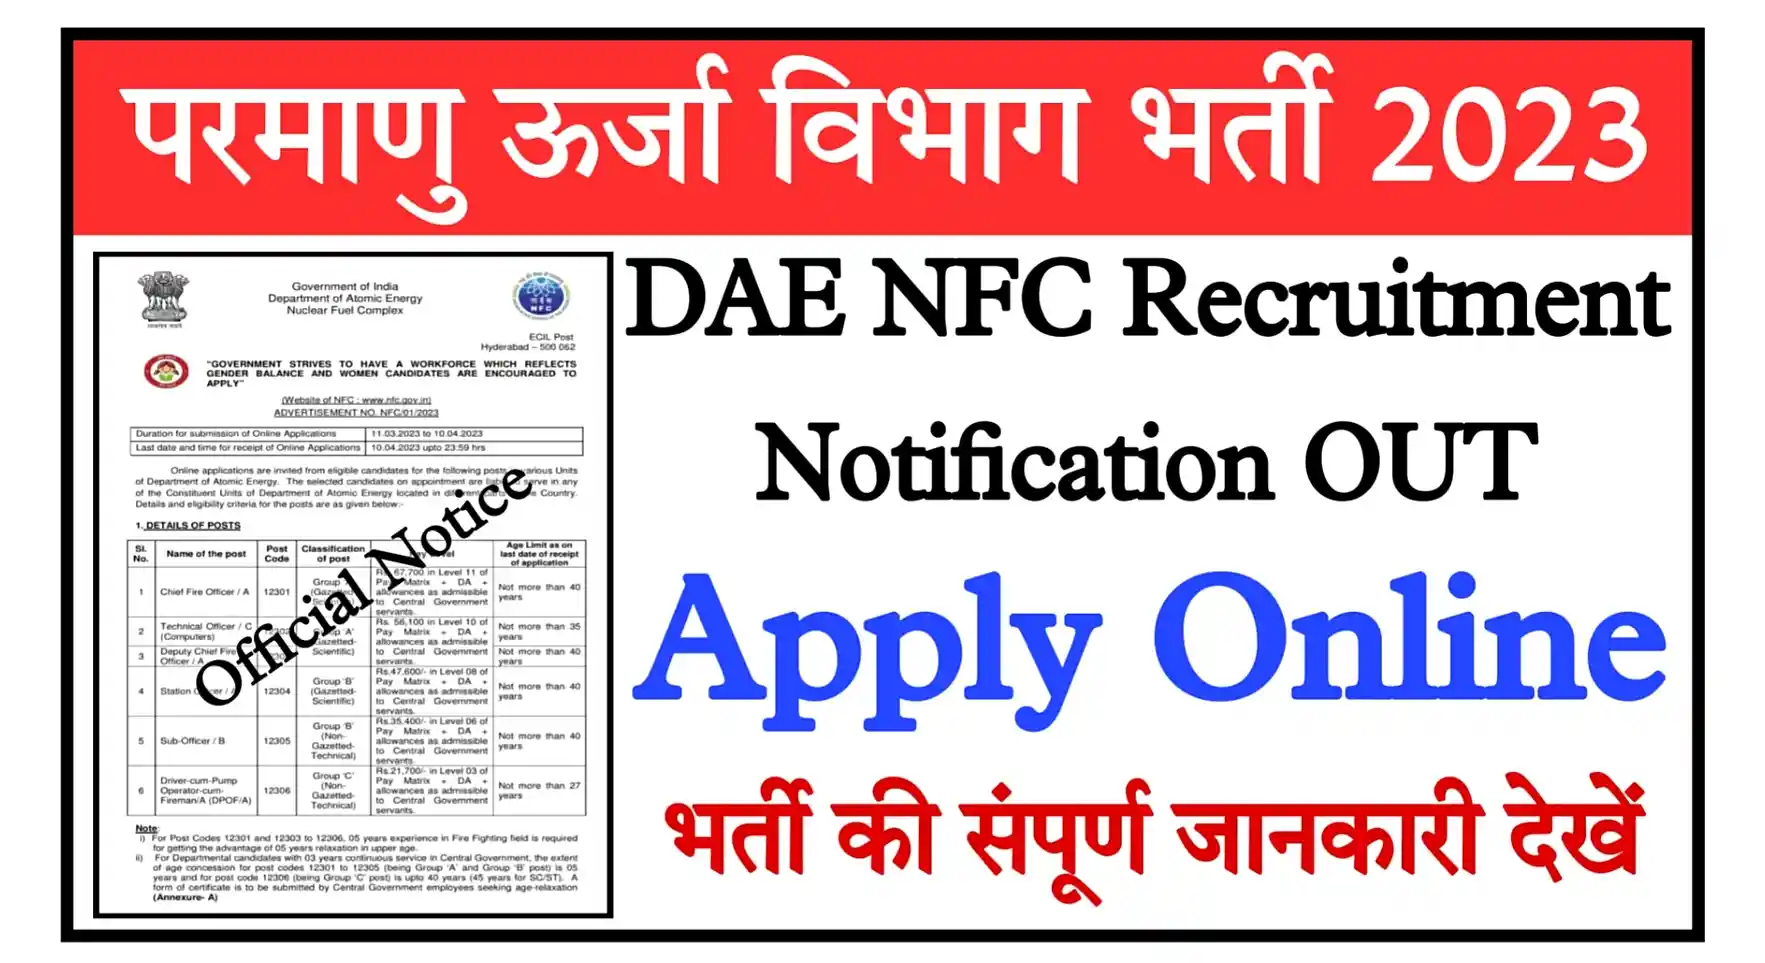 DAE NFC Recruitment 2023 Notification, Apply Online परमाणु ऊर्जा विभाग भर्ती का नोटिफिकेशन जारी, ऑनलाइन आवेदन शुरू